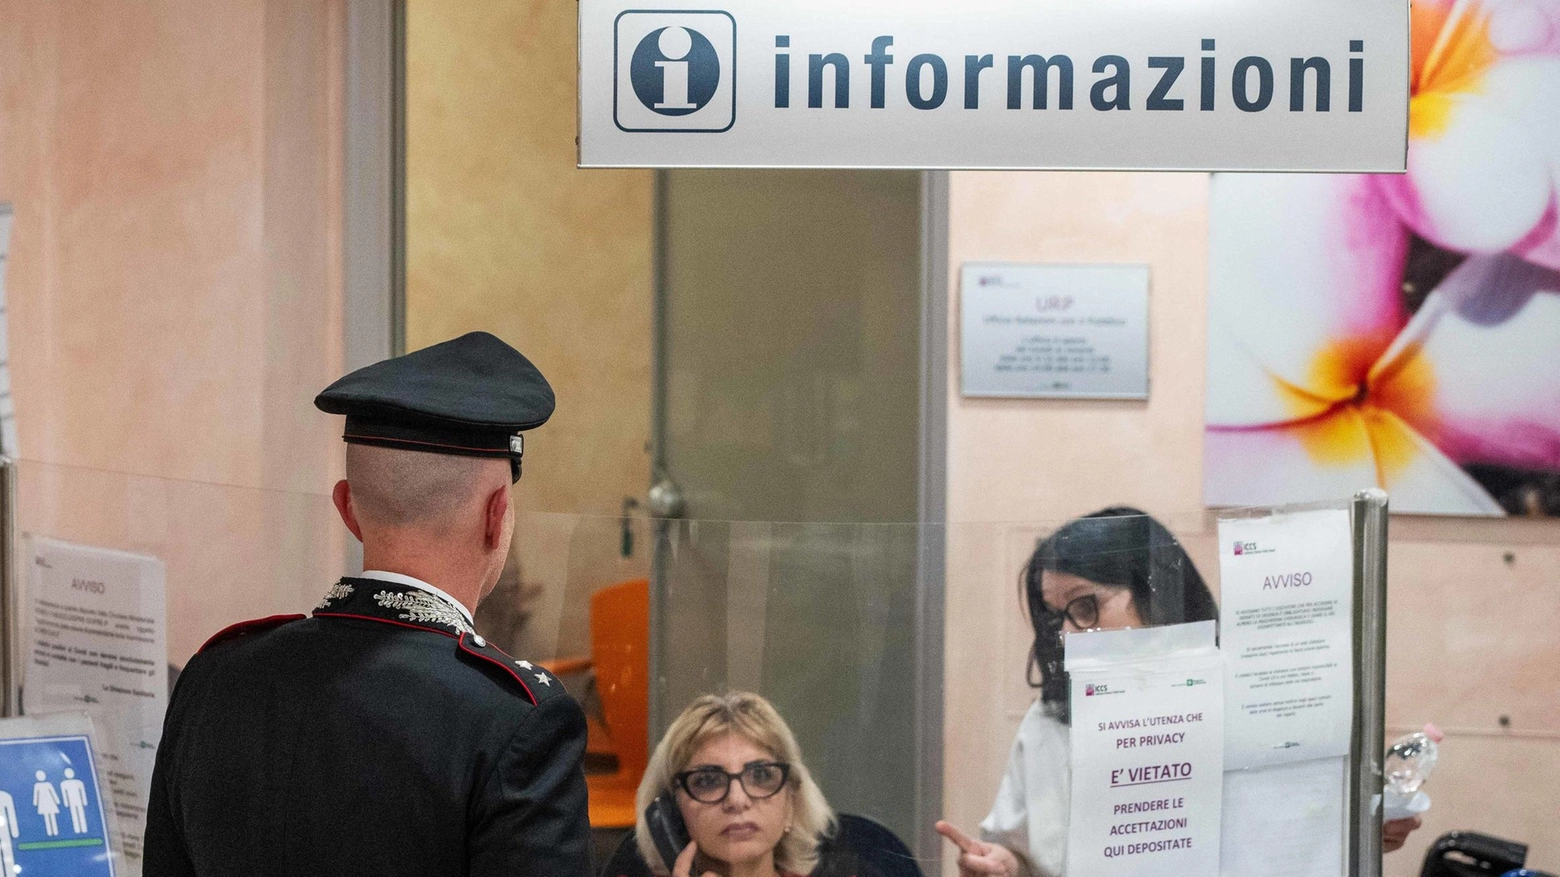 Un uomo italiano no vax rifiuta di indossare la mascherina in ospedale, costringendo l'intervento dei militari per farlo desistere